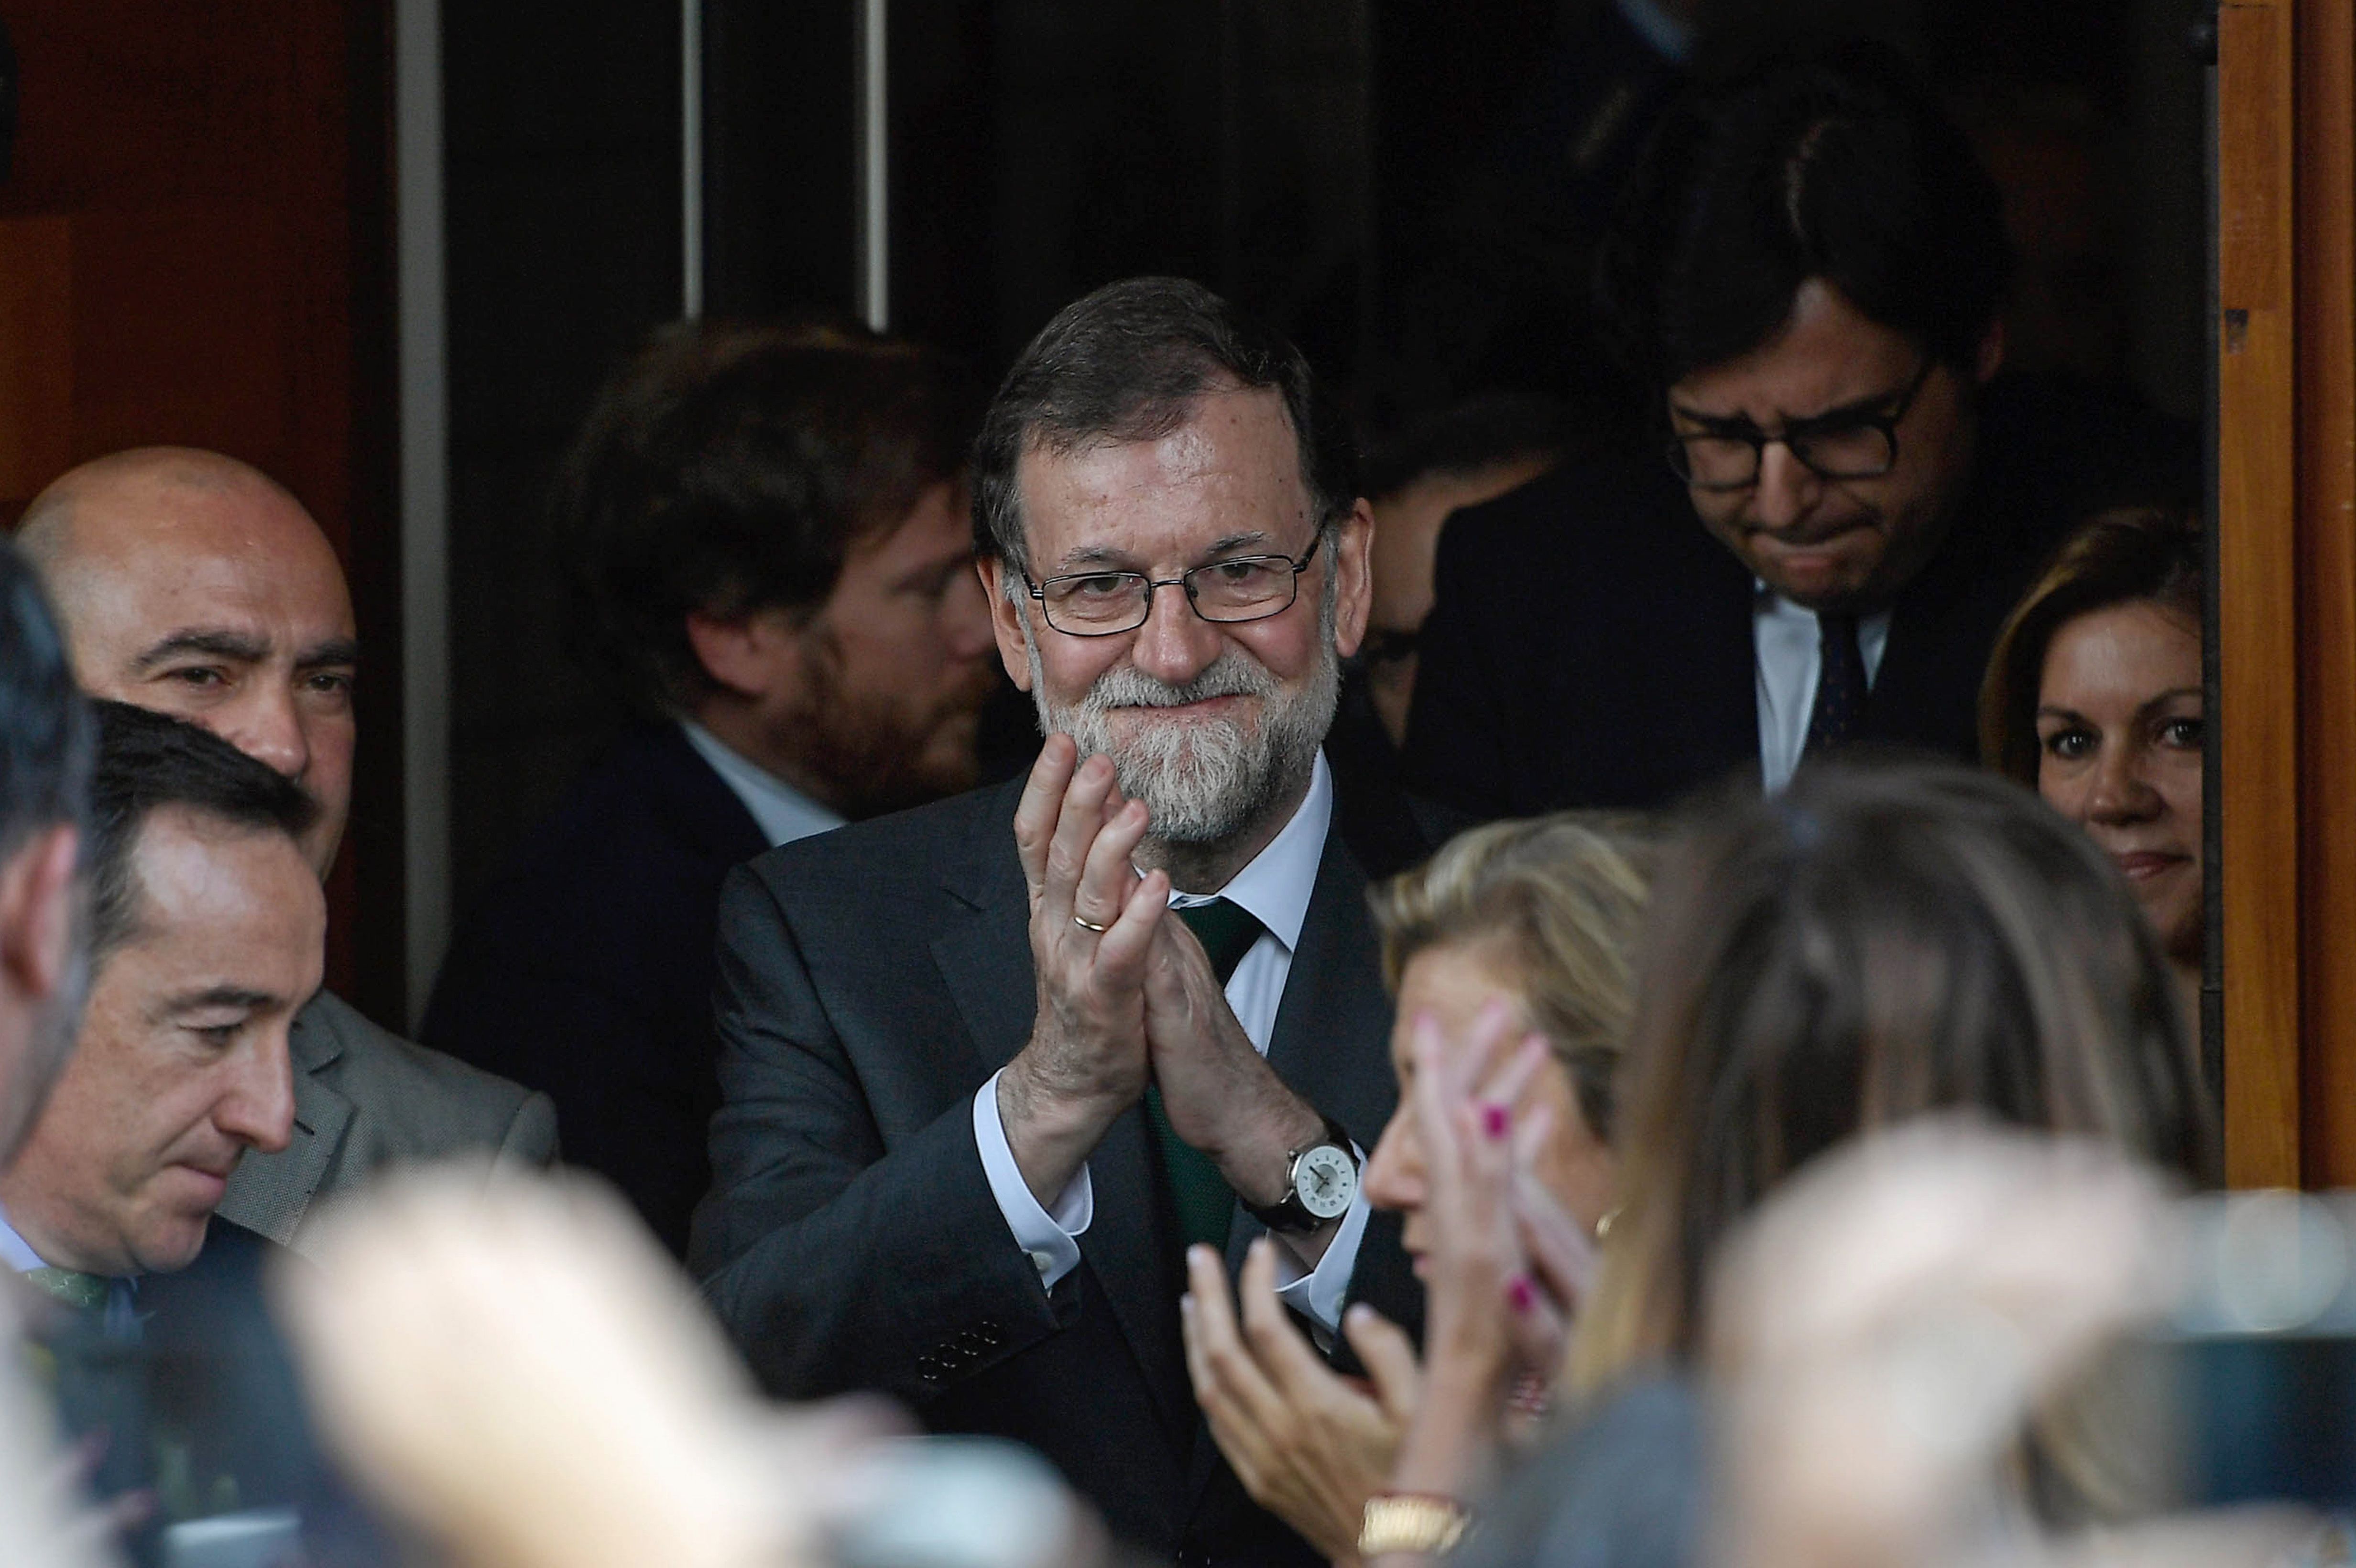 Rajoy se va con pensión de 80 mil euros al año; expresidentes mexicanos reciben aún más